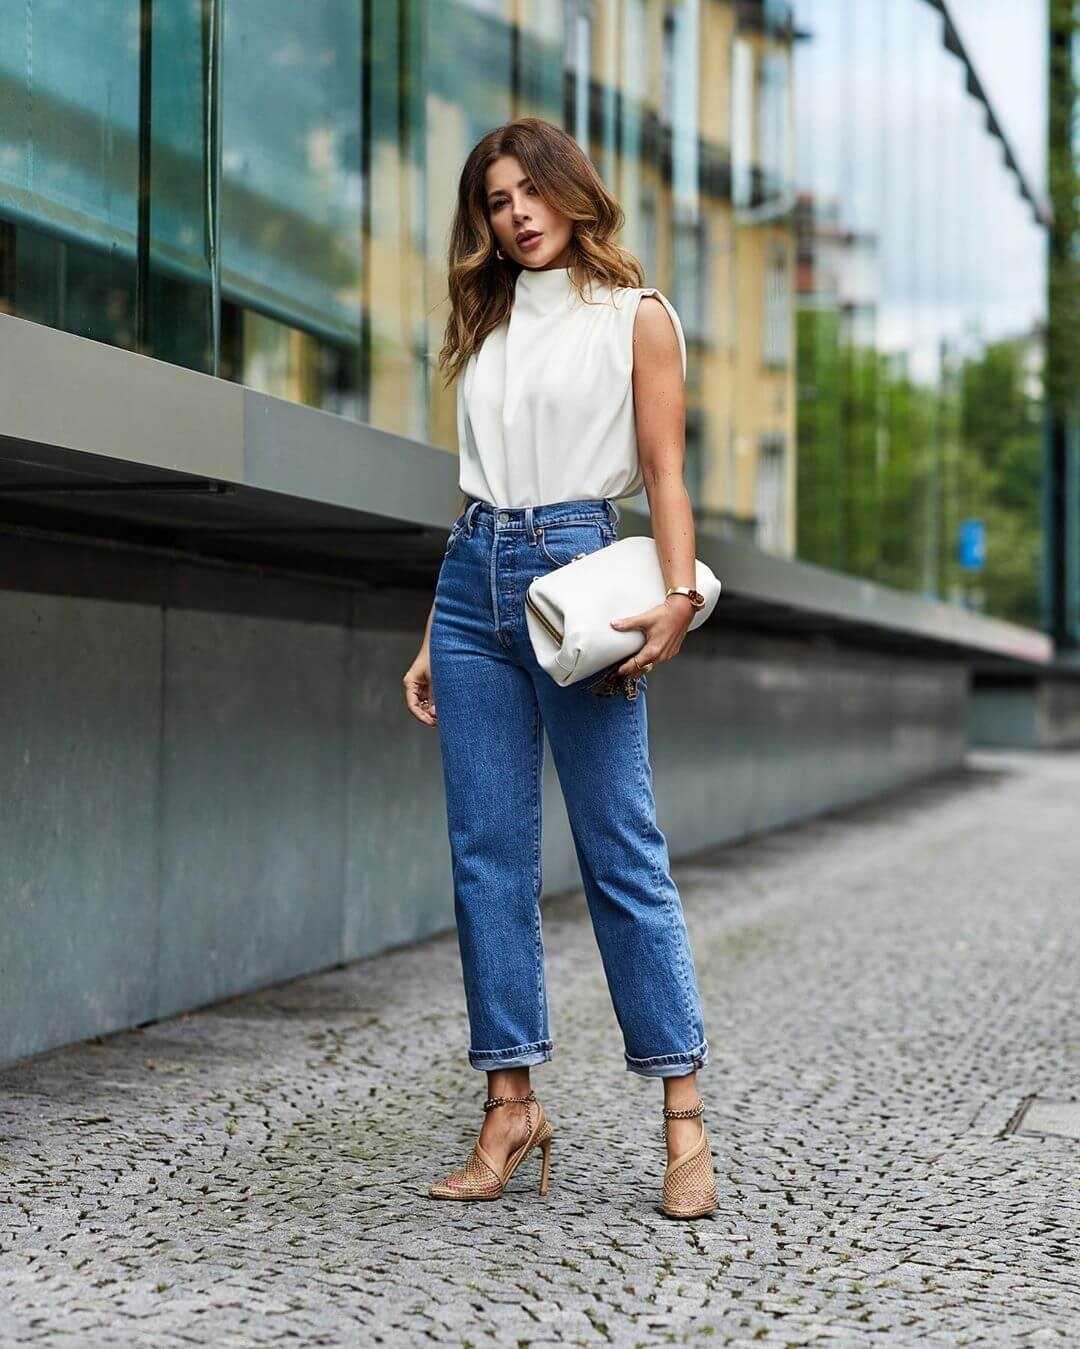 Модные джинсы 2020 – женские, стильные фасоны, тренды сезона, фото
женские джинсы: что будет в моде 2020 — modnayadama